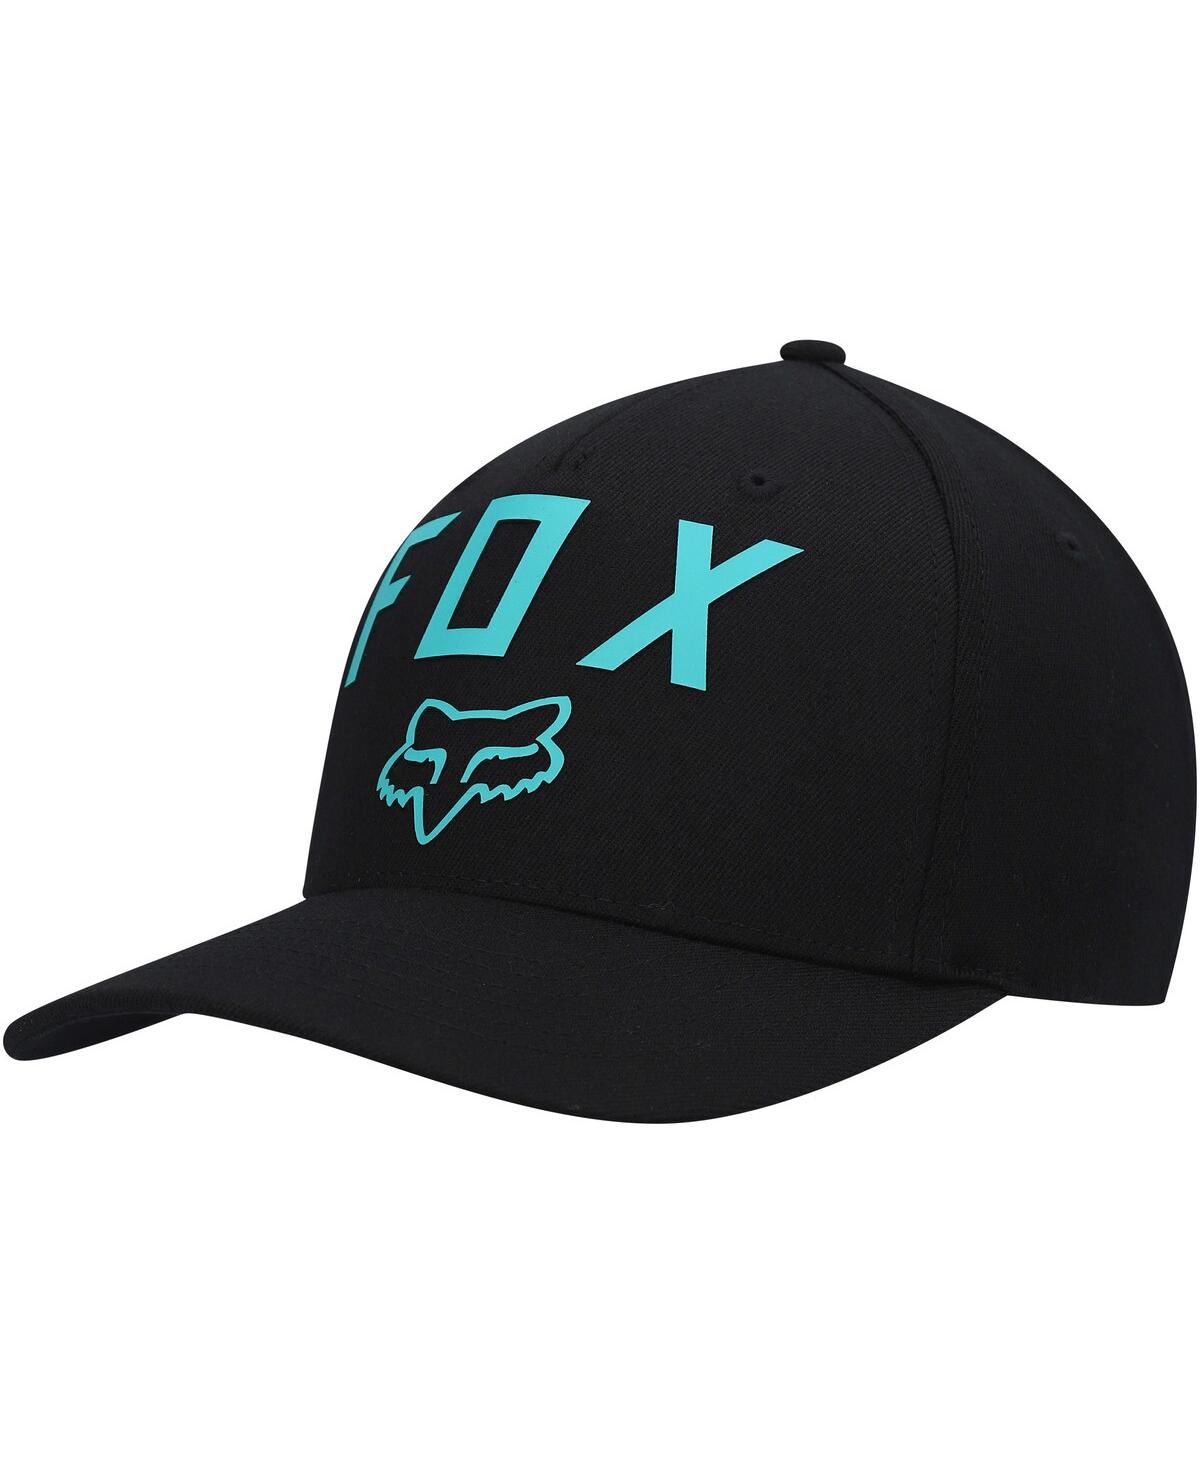 Men's Black Number Two 2.0 Flex Hat - Black